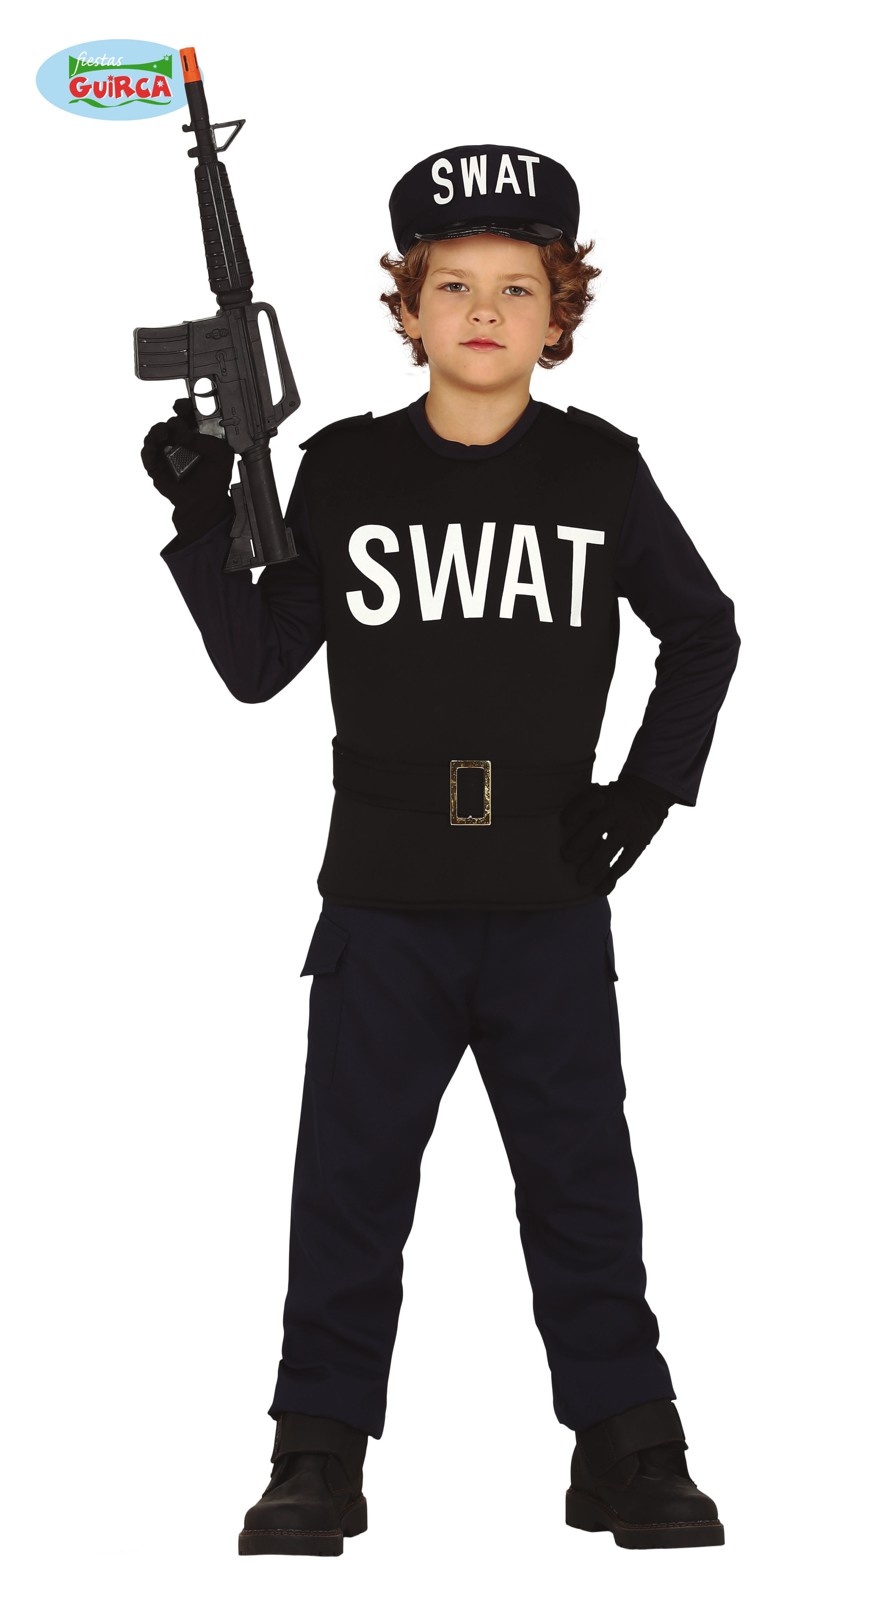 Watt Eerlijkheid concept Swat Politie Kostuum Kind - Feestbazaar.nl